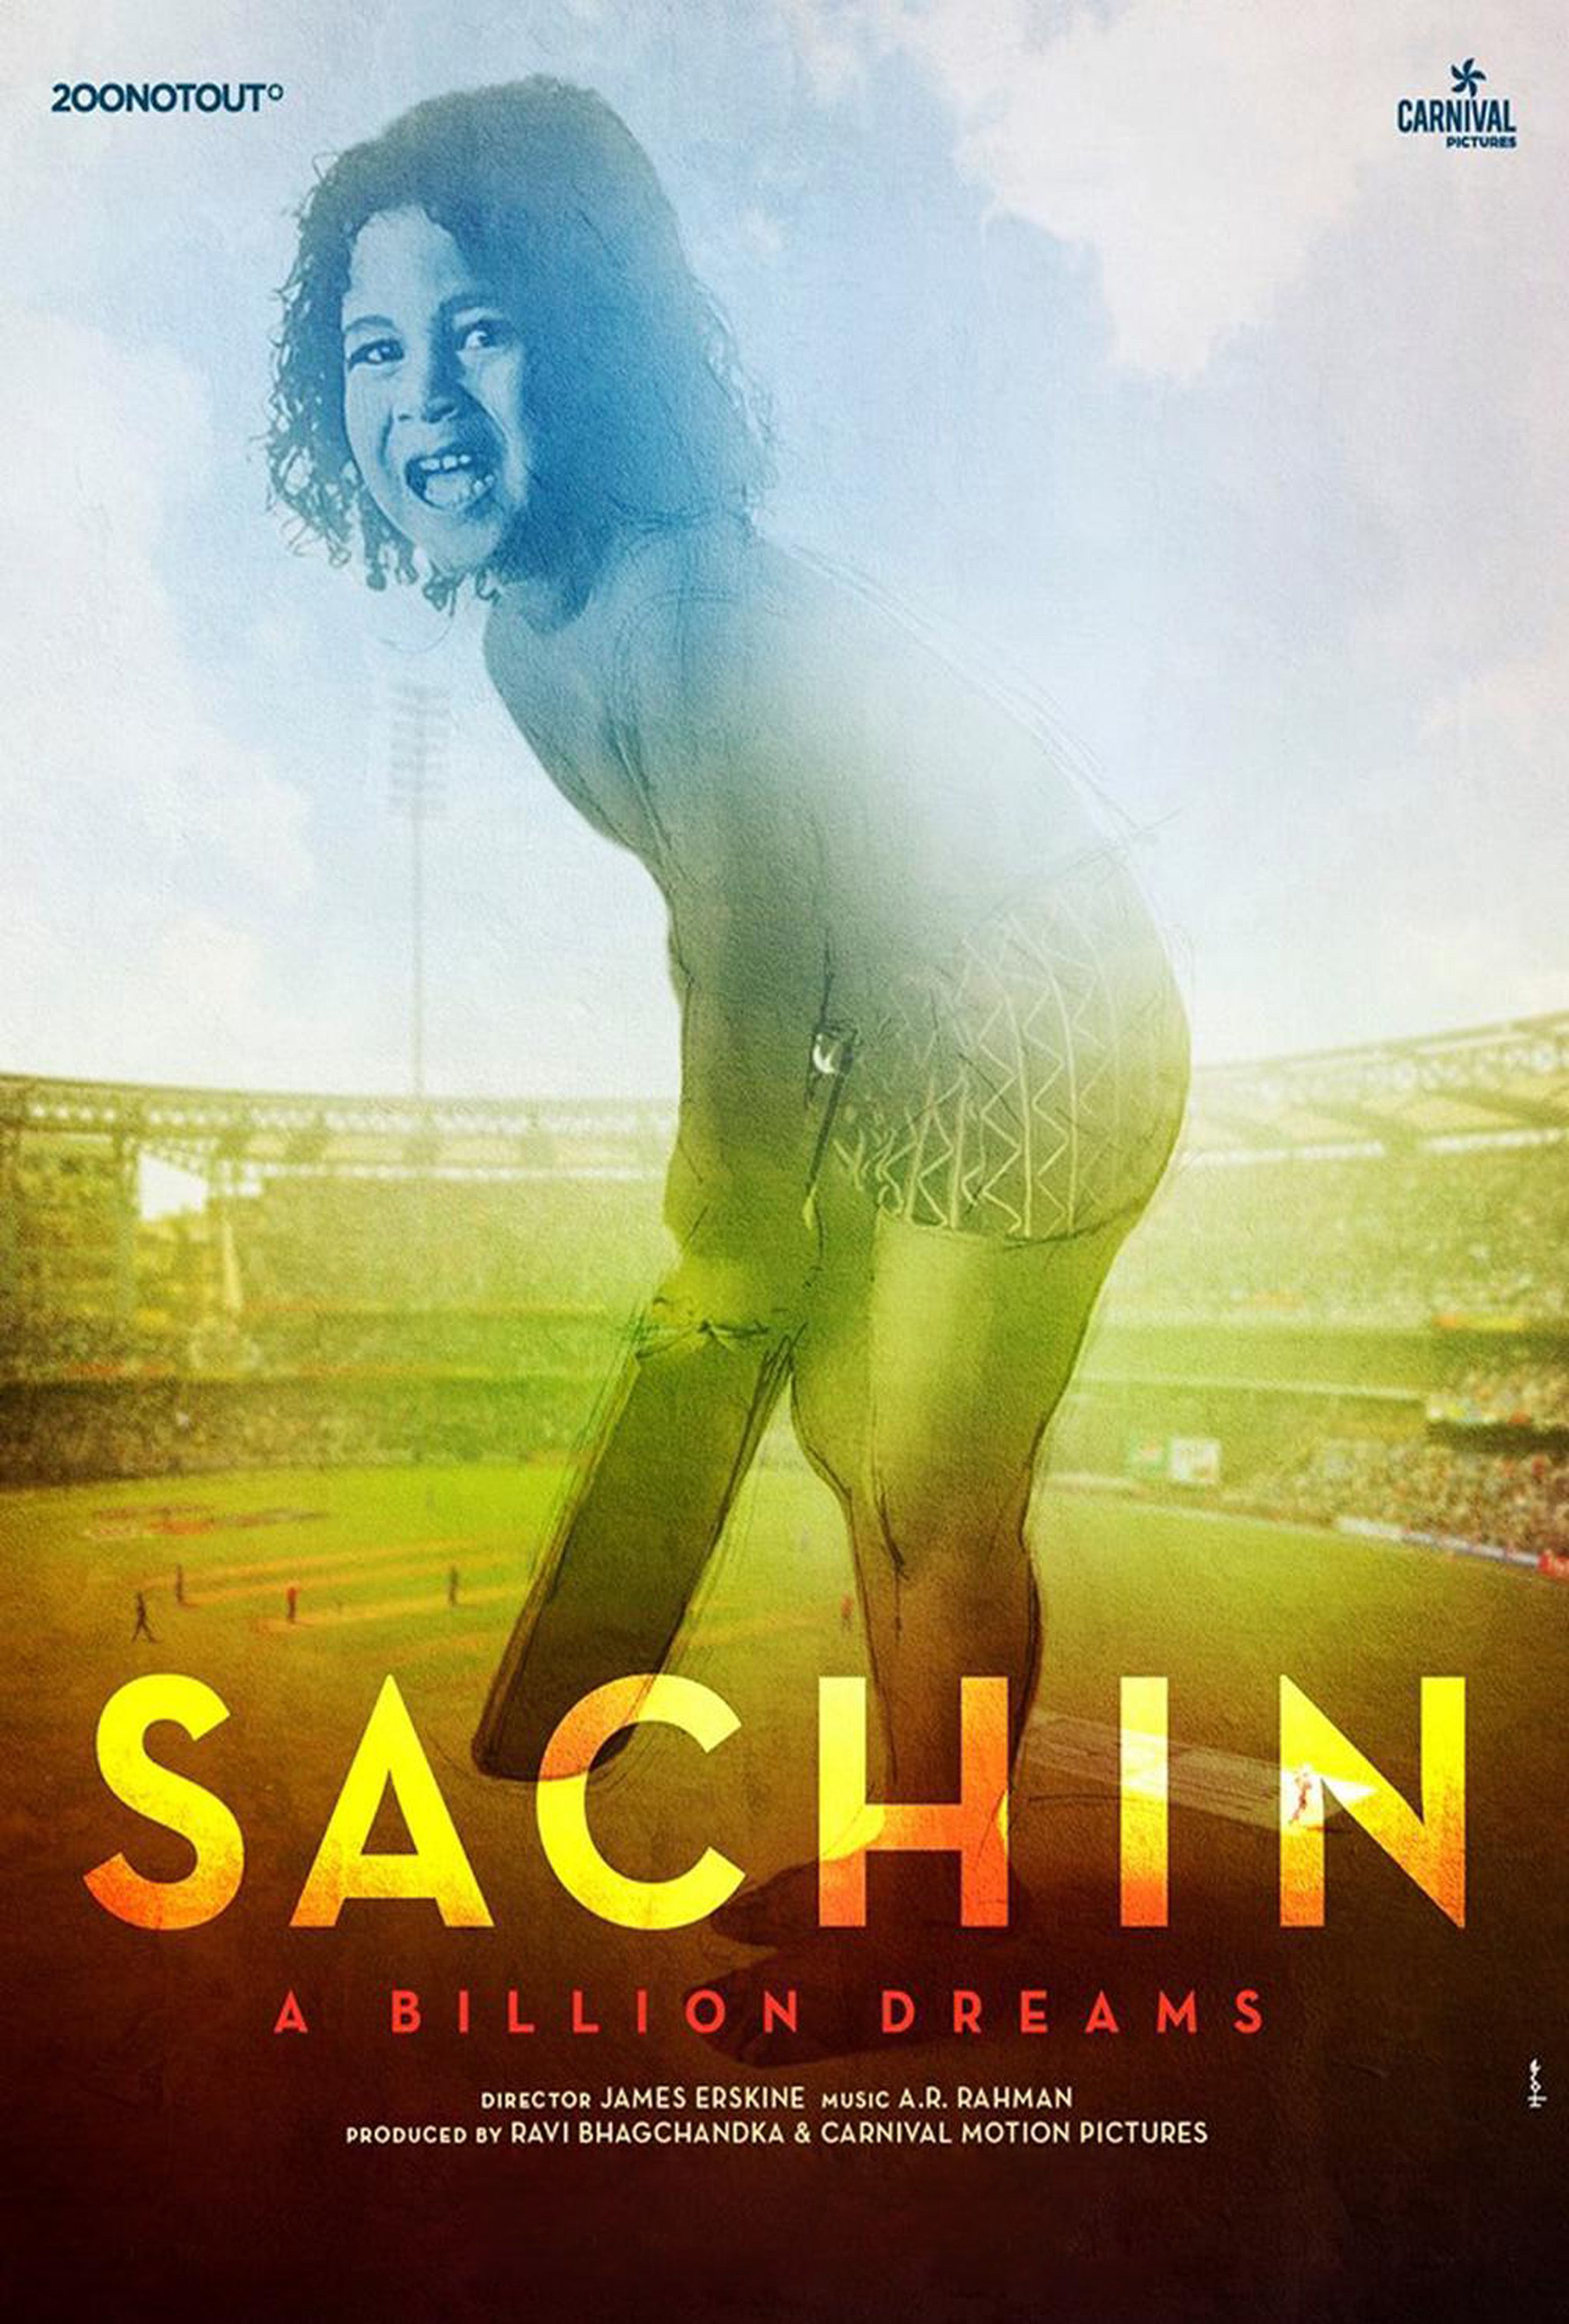 Sachin - A Billion Dreams movie in hindi 720p